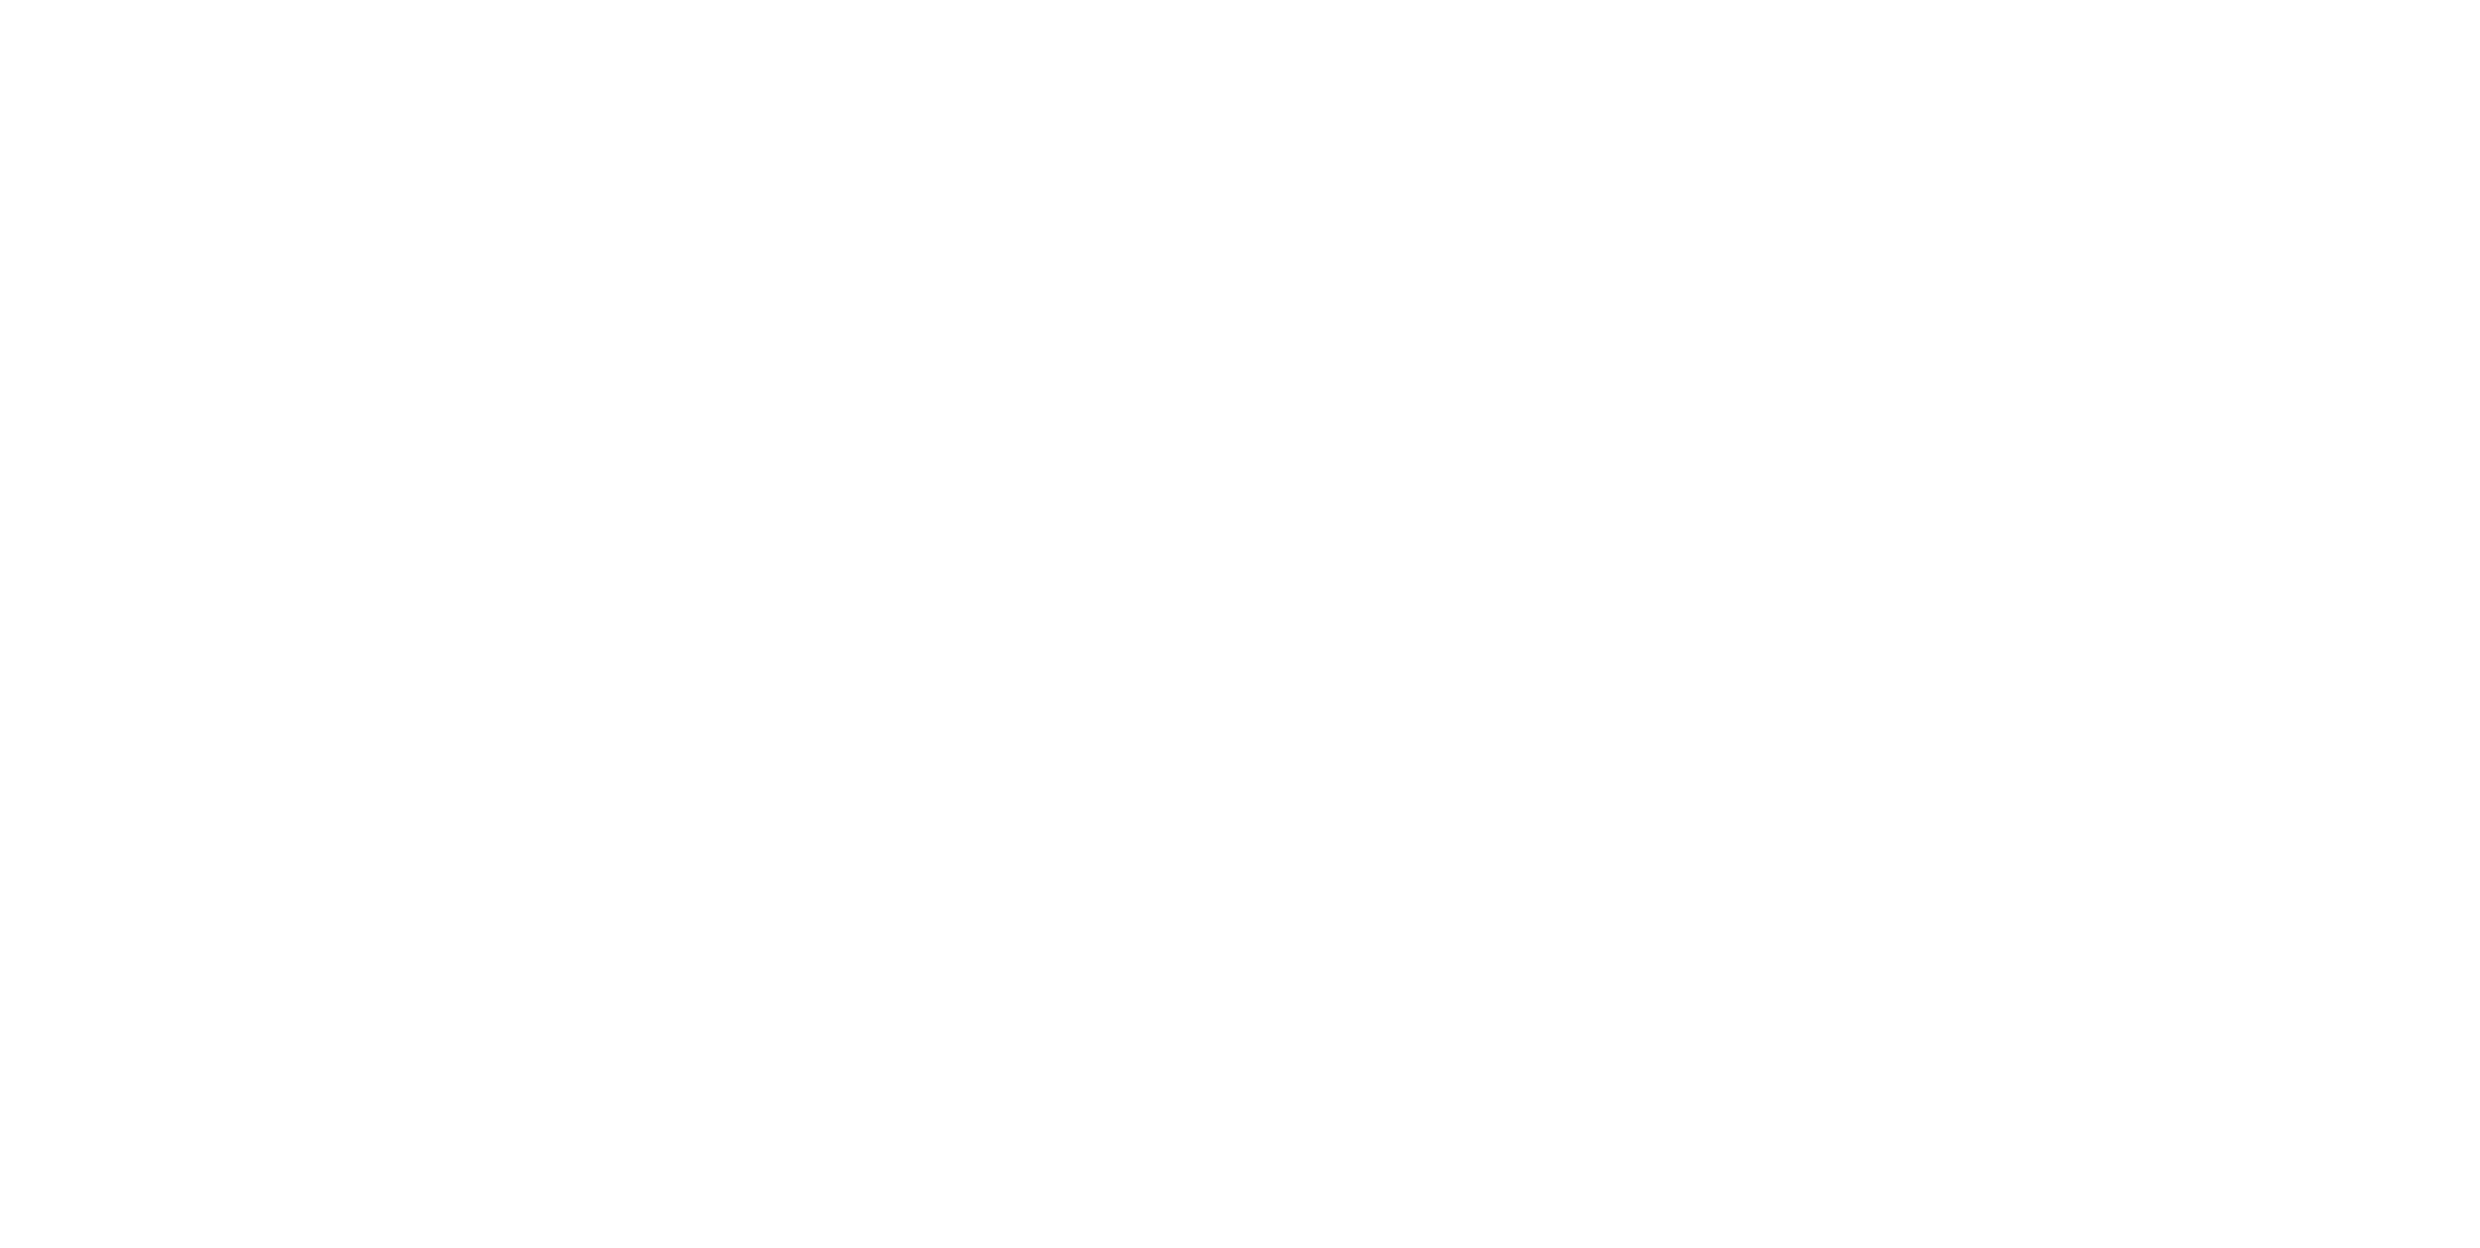 Coke Zero Logo - Coca Cola And Coke Zero World Cup Campaign